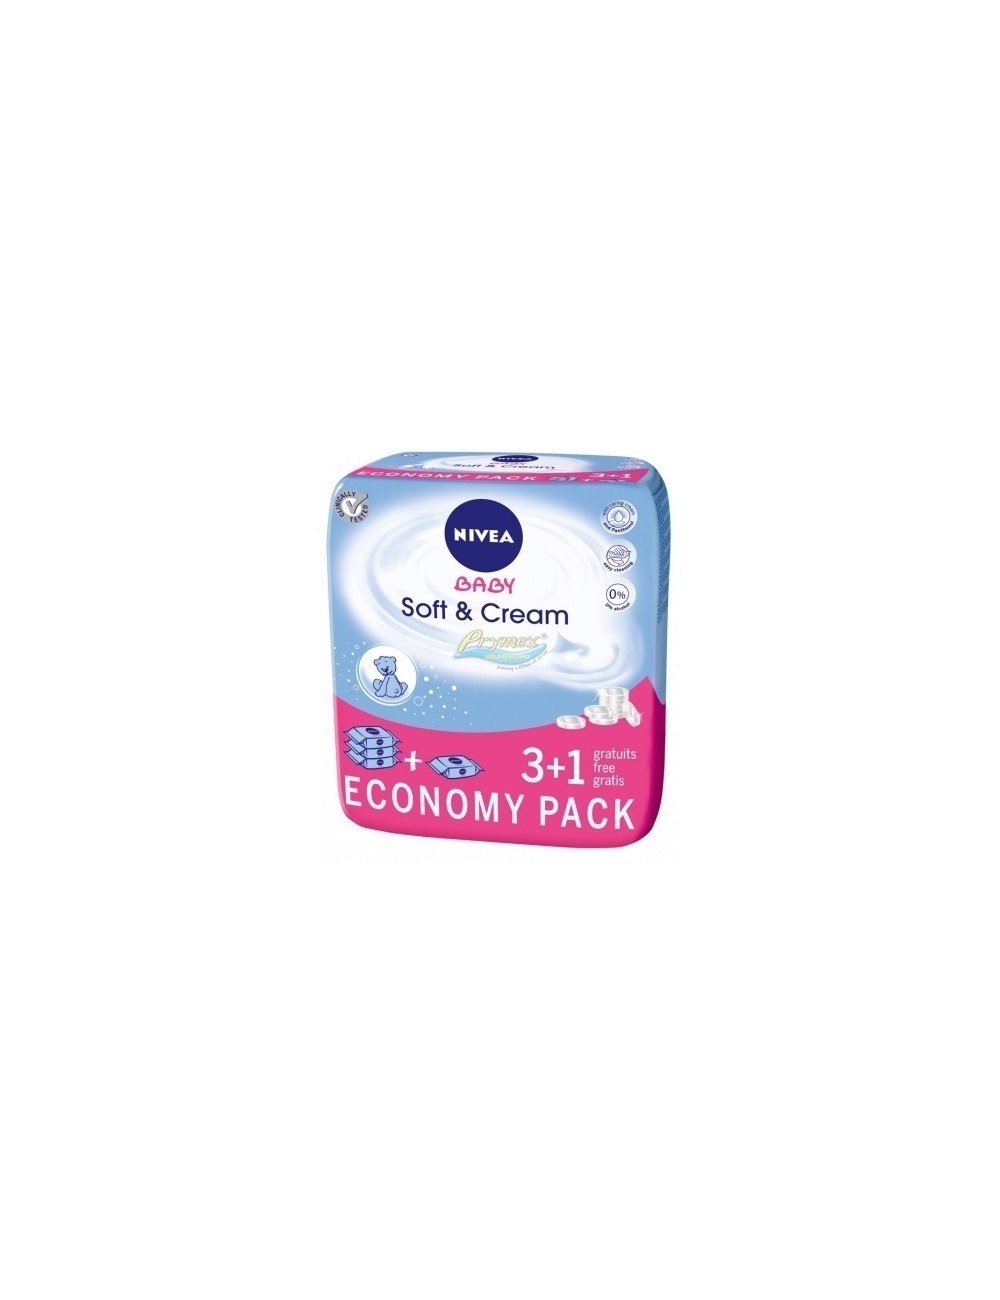 Nivea Baby Soft & Cream 3+1 Economy Pack – chusteczki nawilżane dla dzieci